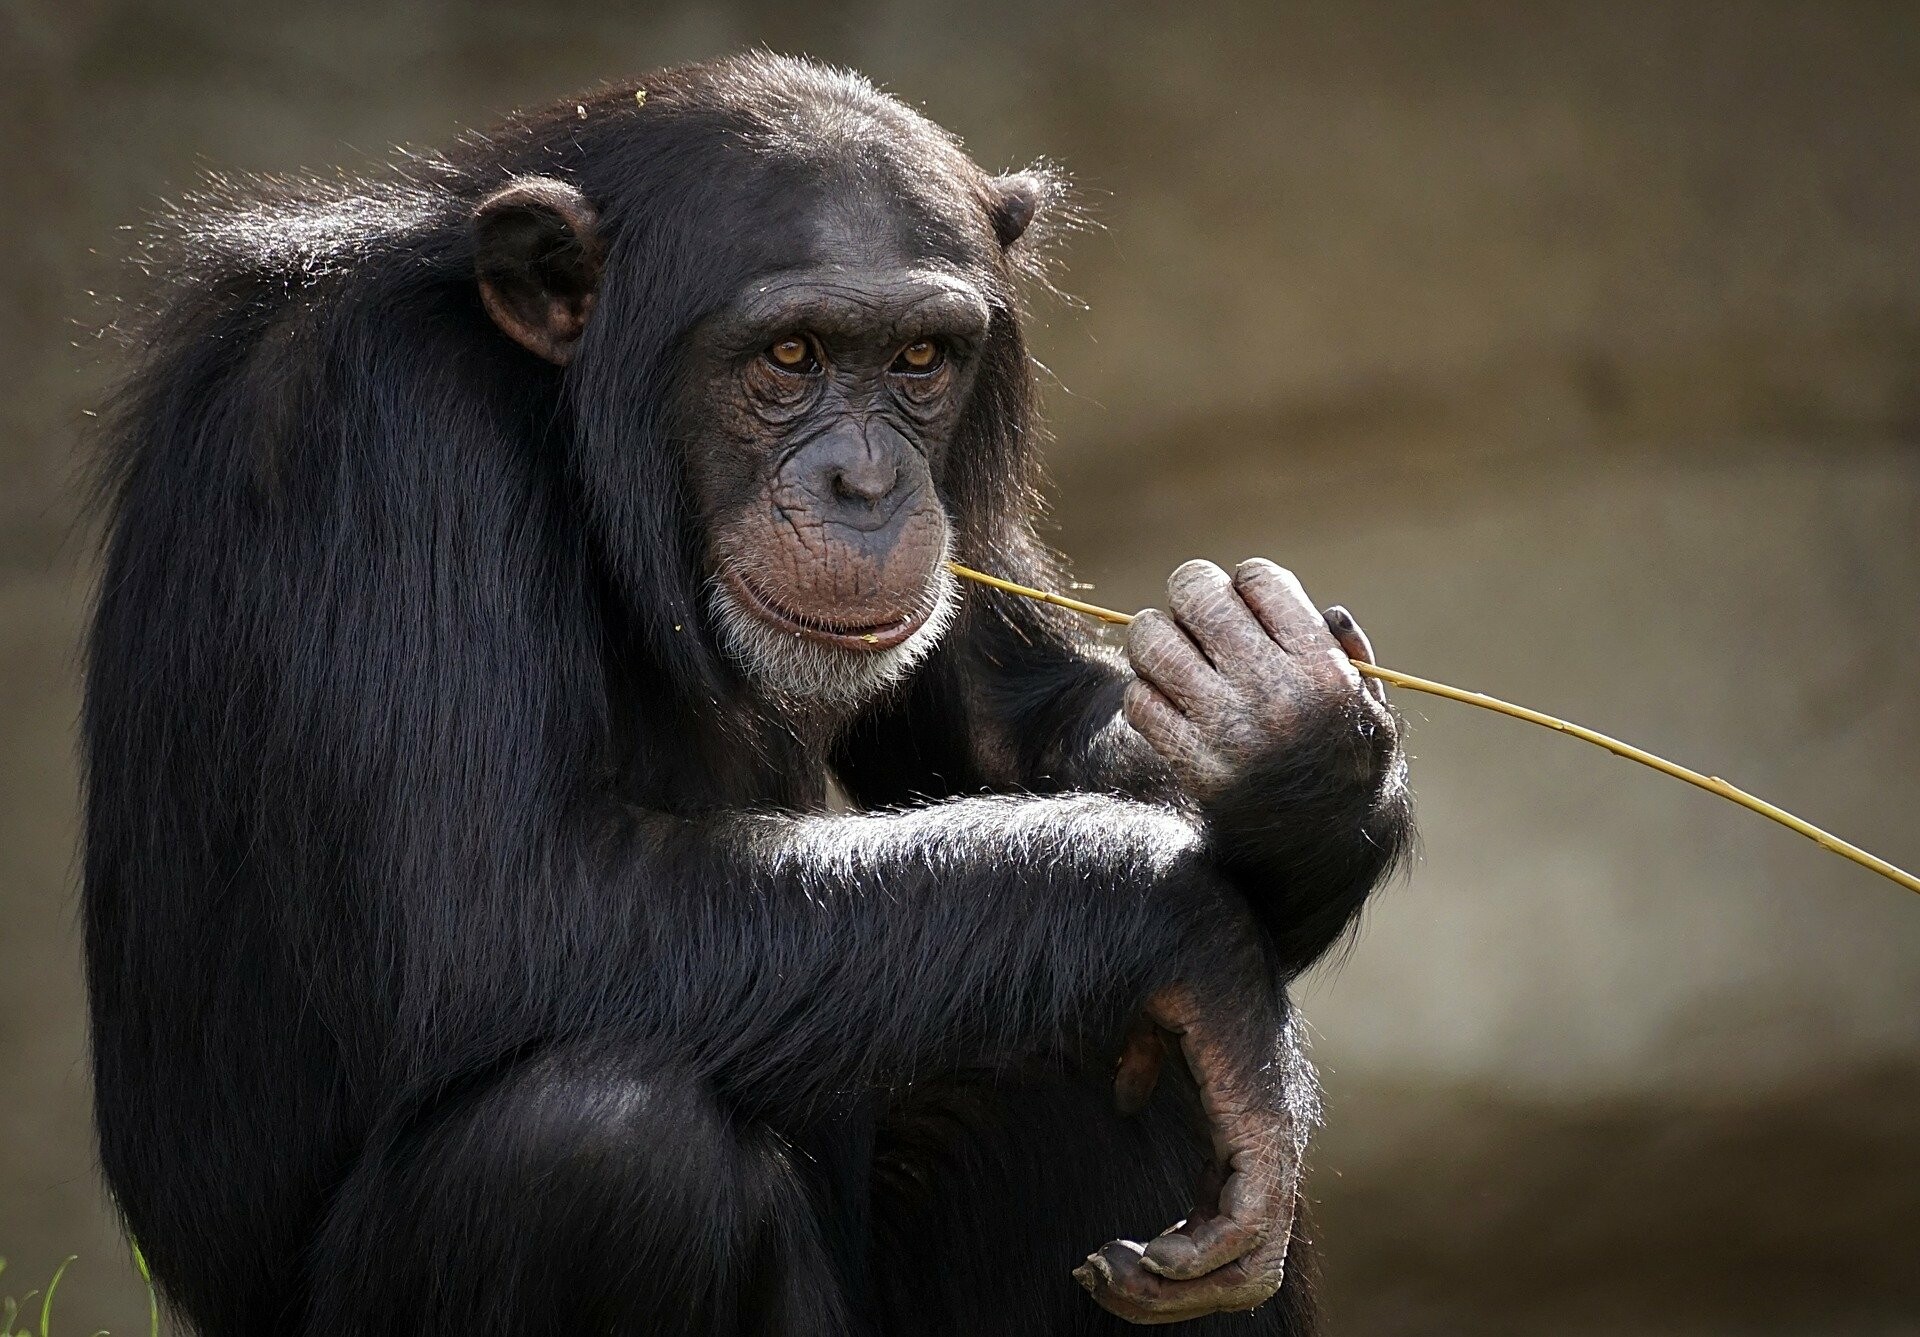 Αττικό Ζωολογικό Πάρκο: Βίντεο ντοκουμέντο με θανάτωση χιμπατζή που δραπετεύσε